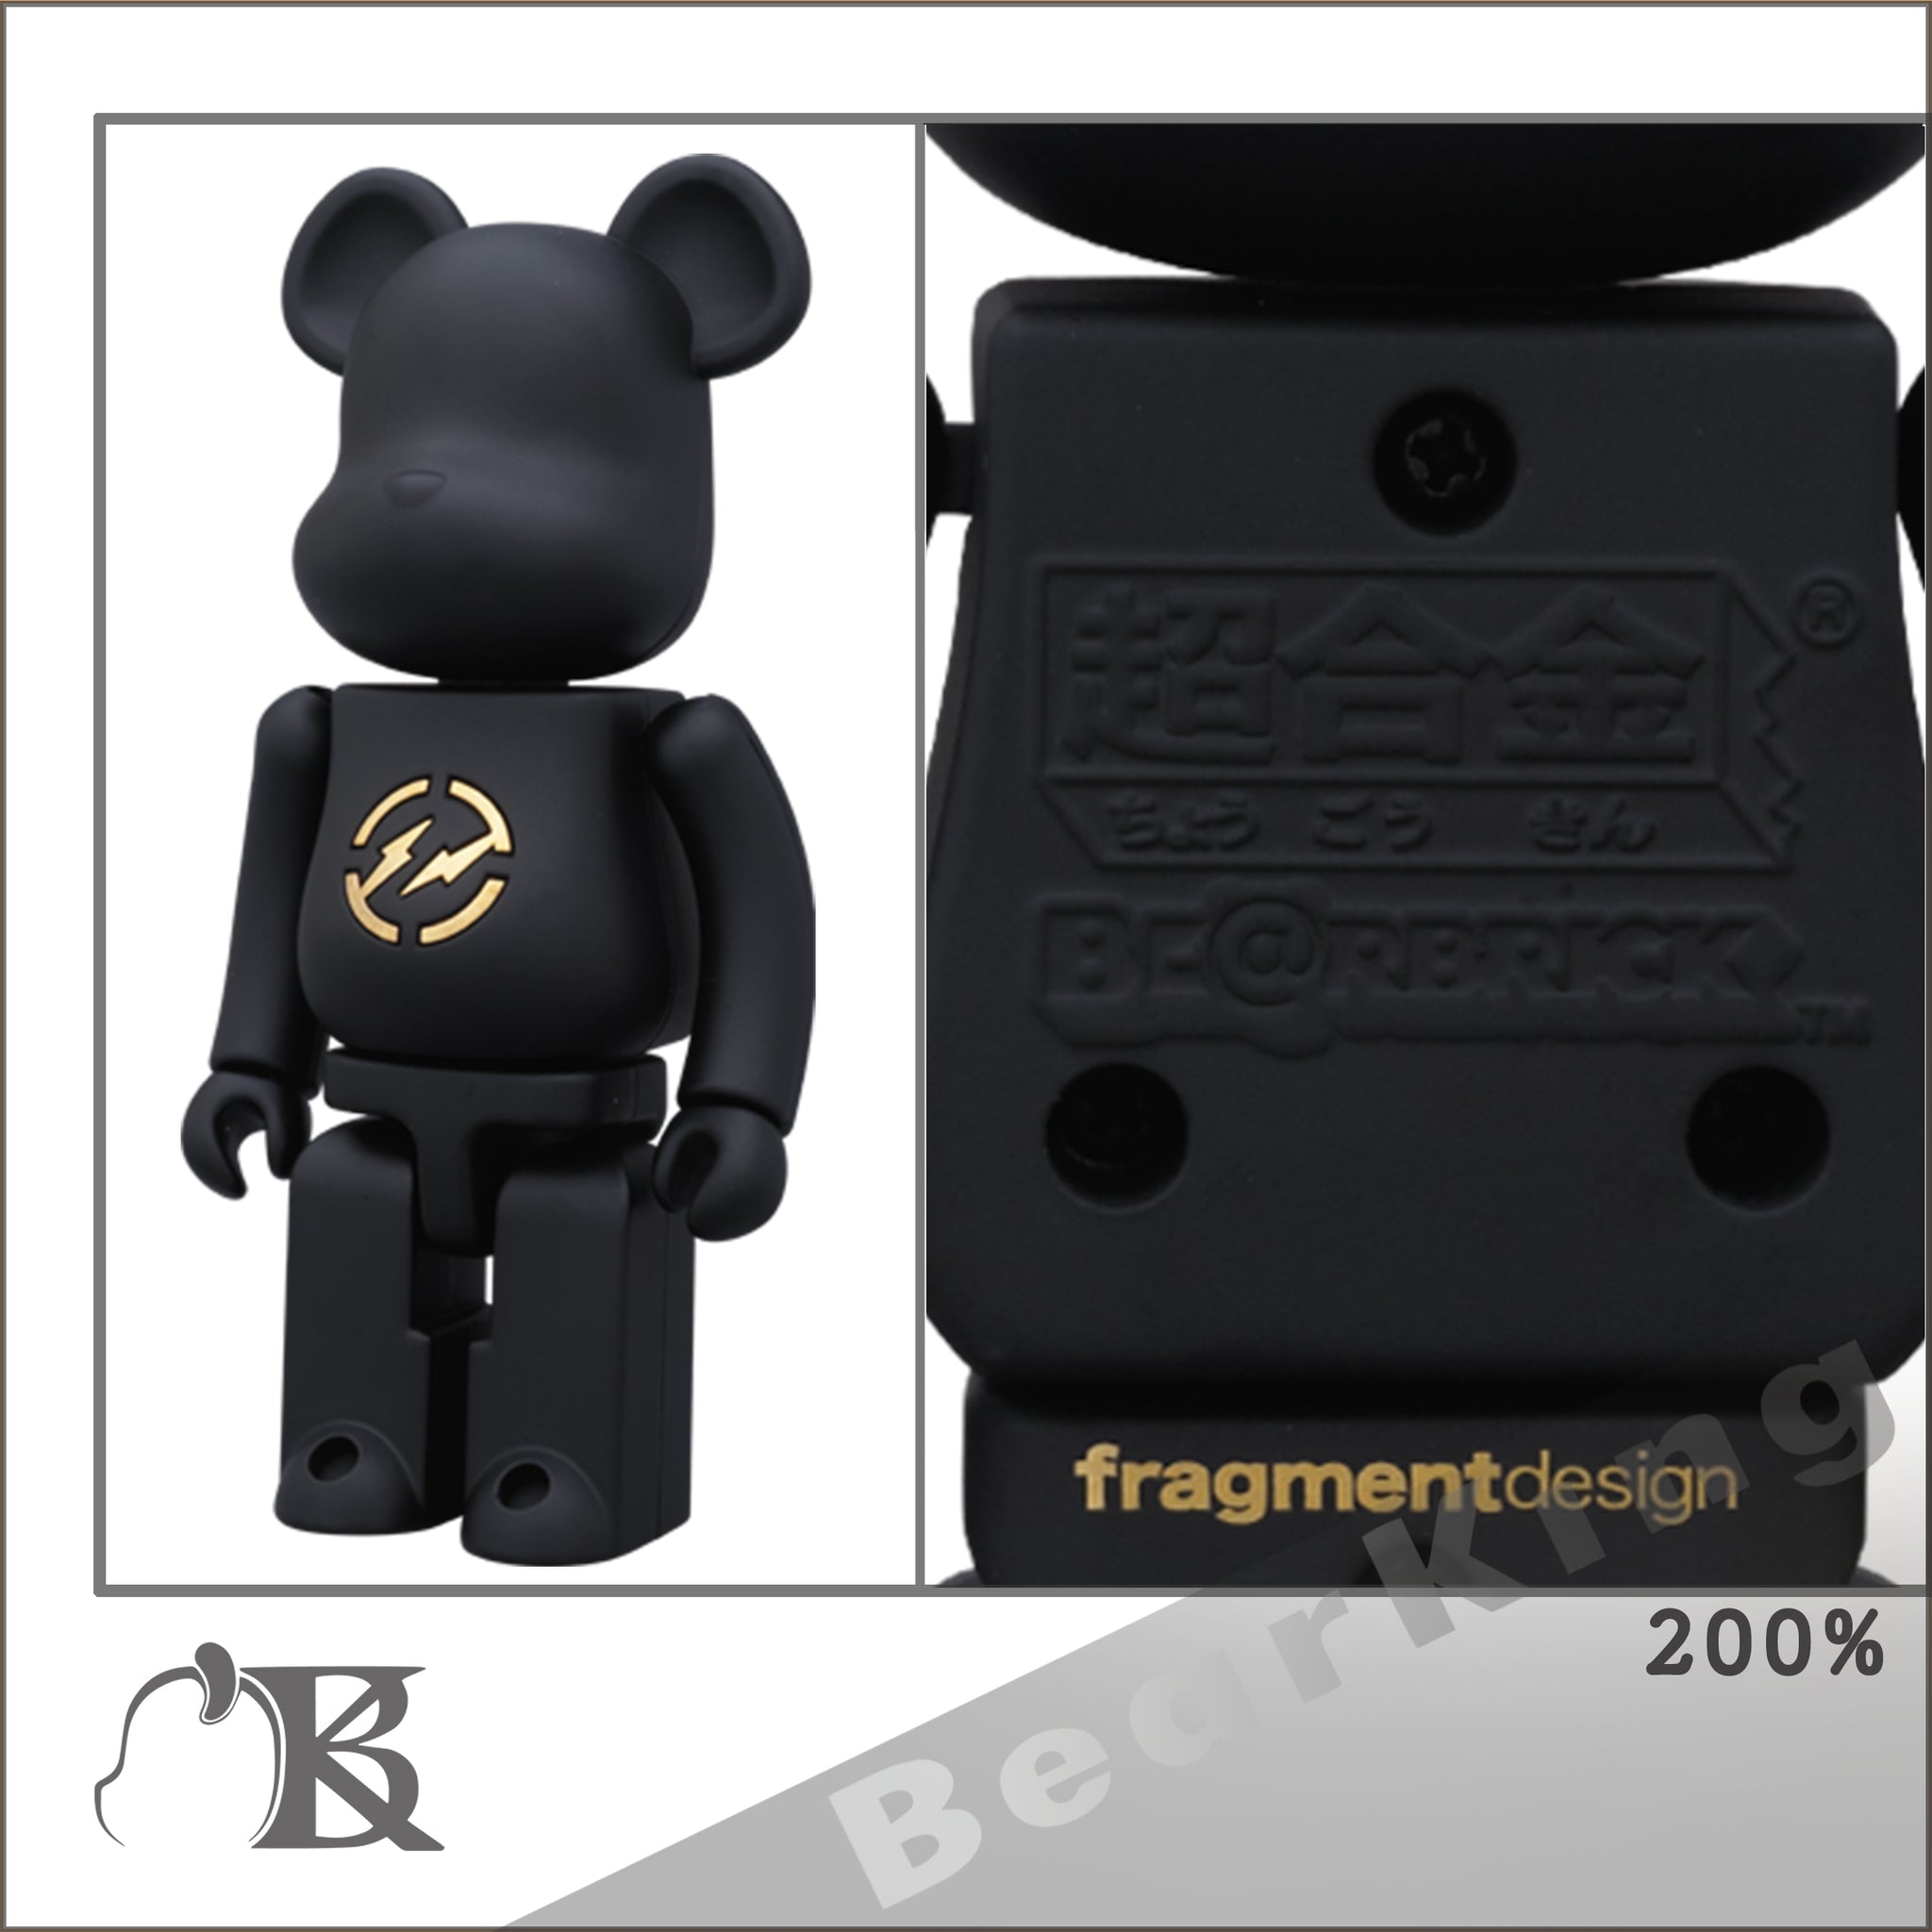 フィギュア超合金 BE@RBRICK fragmentdesign bearbrick